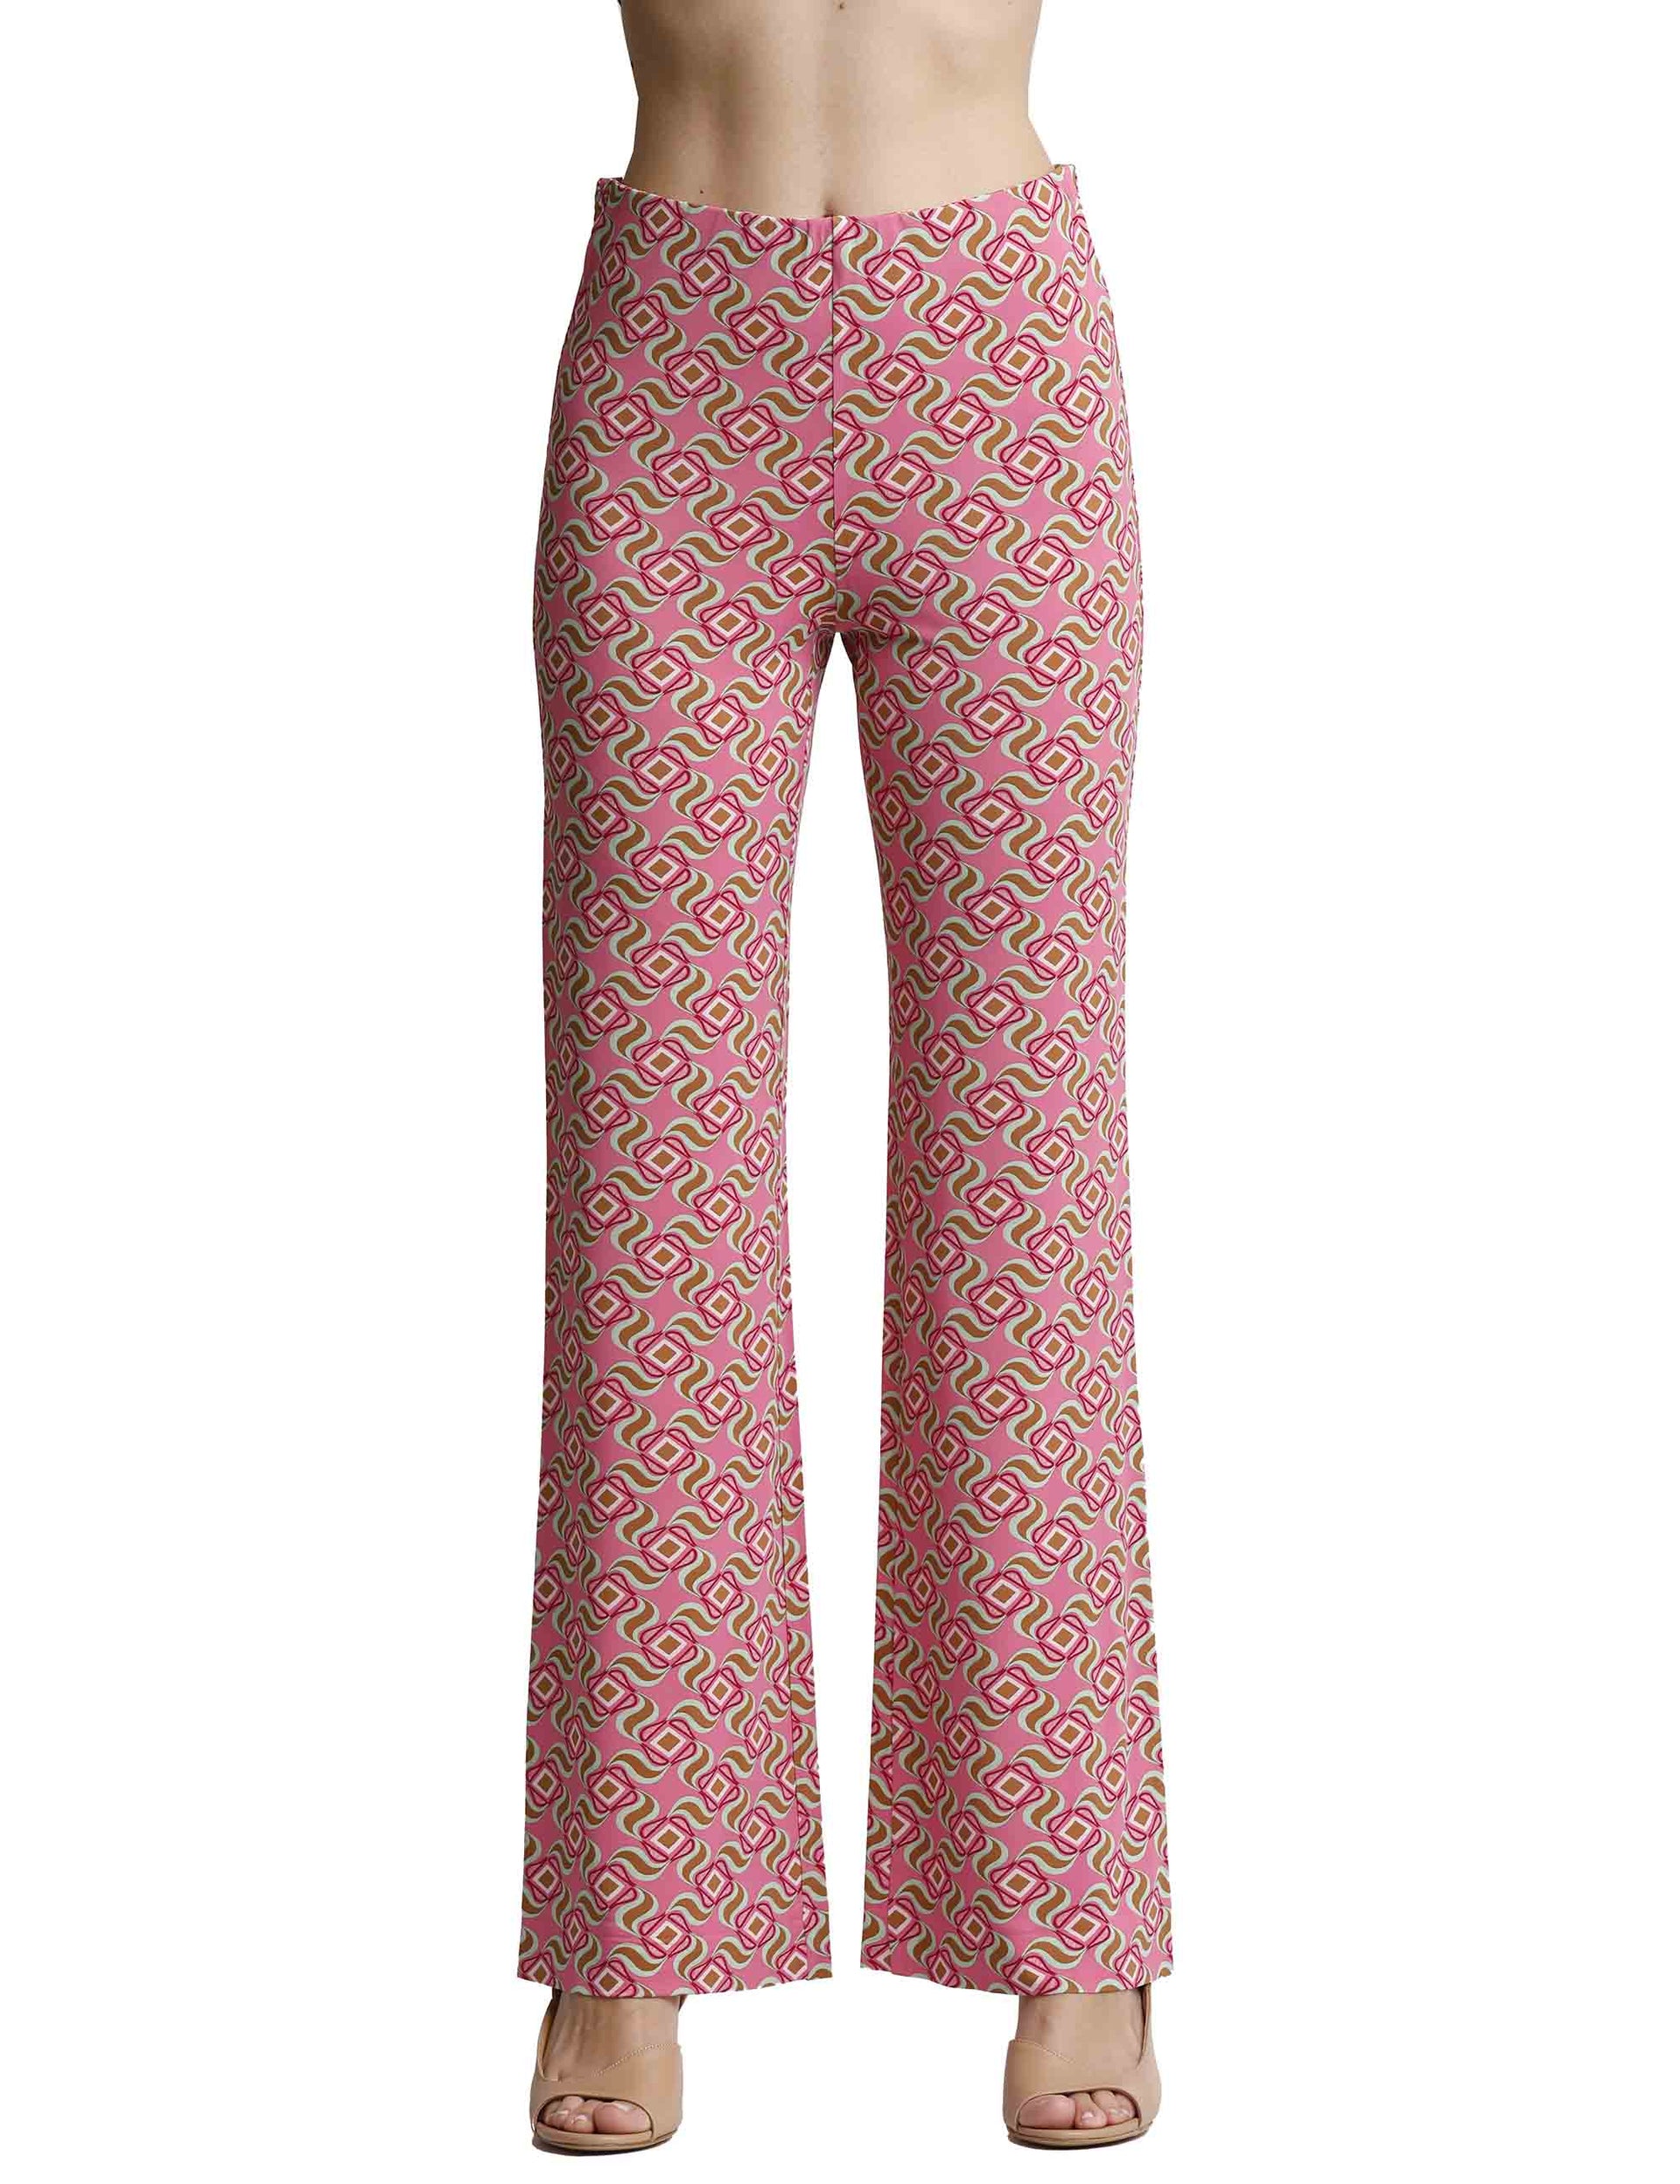 Pantaloni donna Swirl Print in jersey elasticizzato rosa a fantasia